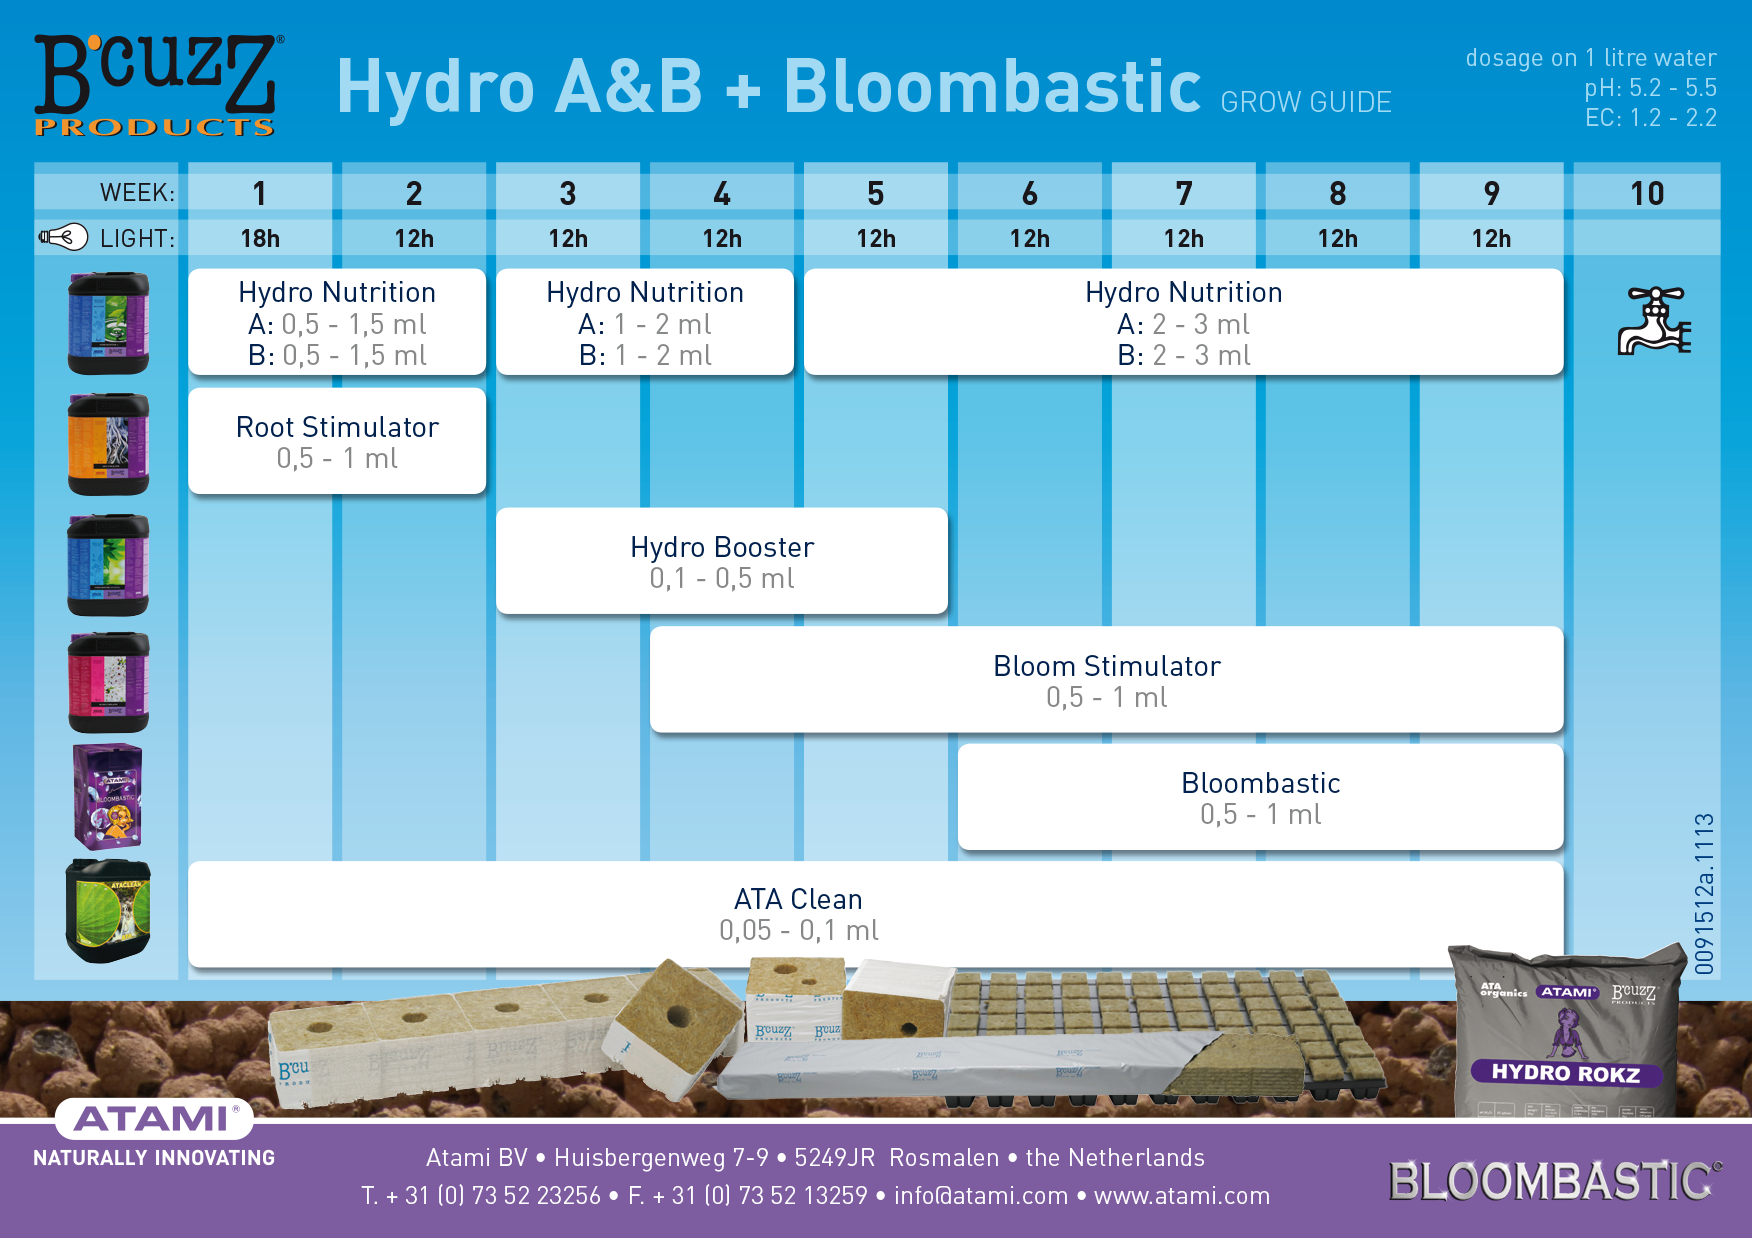 tabla de cultivo bcuzz hydro bloombastic